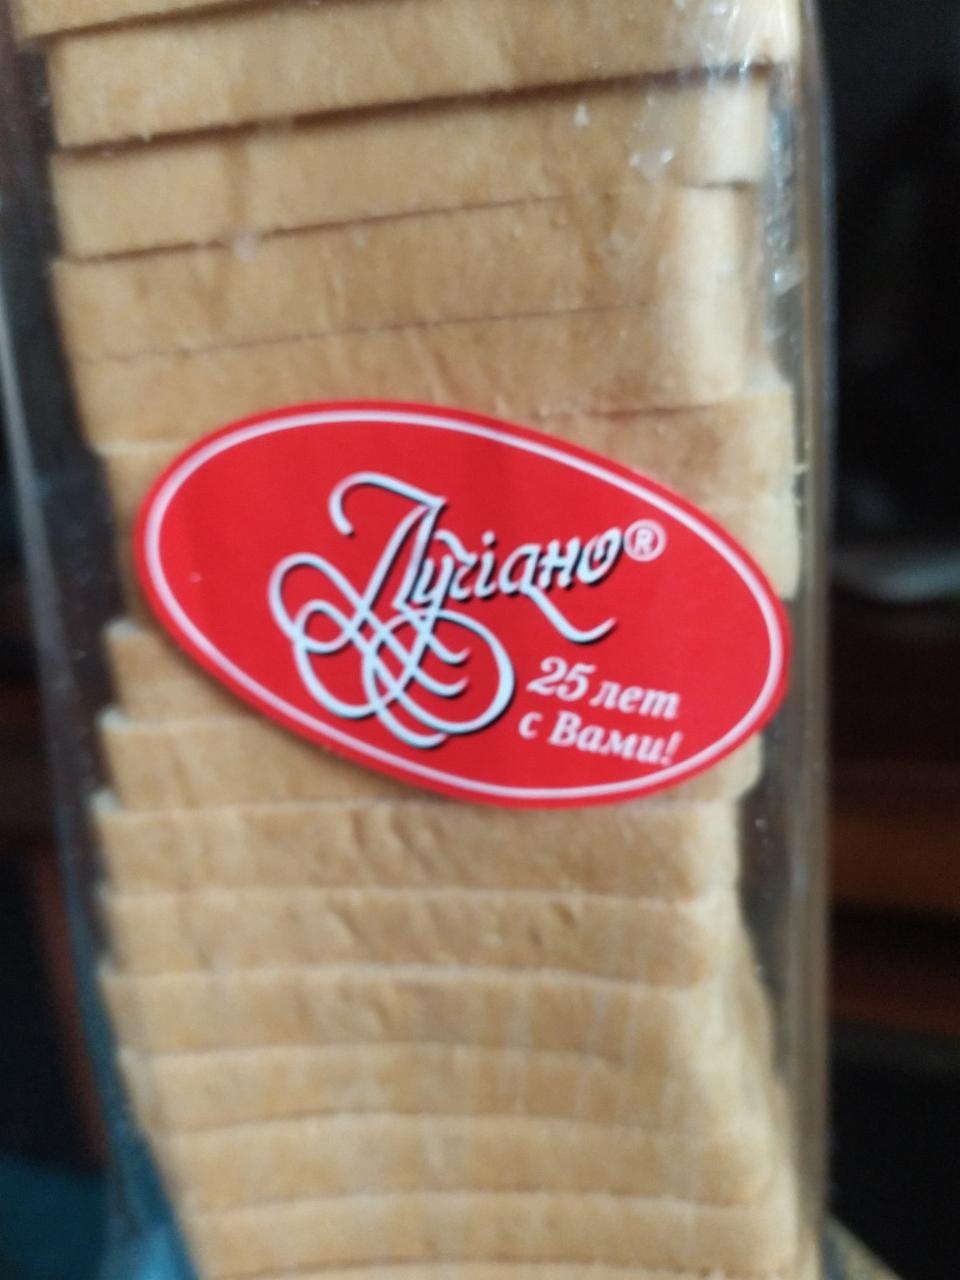 Фото - хлеб тостерный из муки пшеничной высшего сорта Лучiано